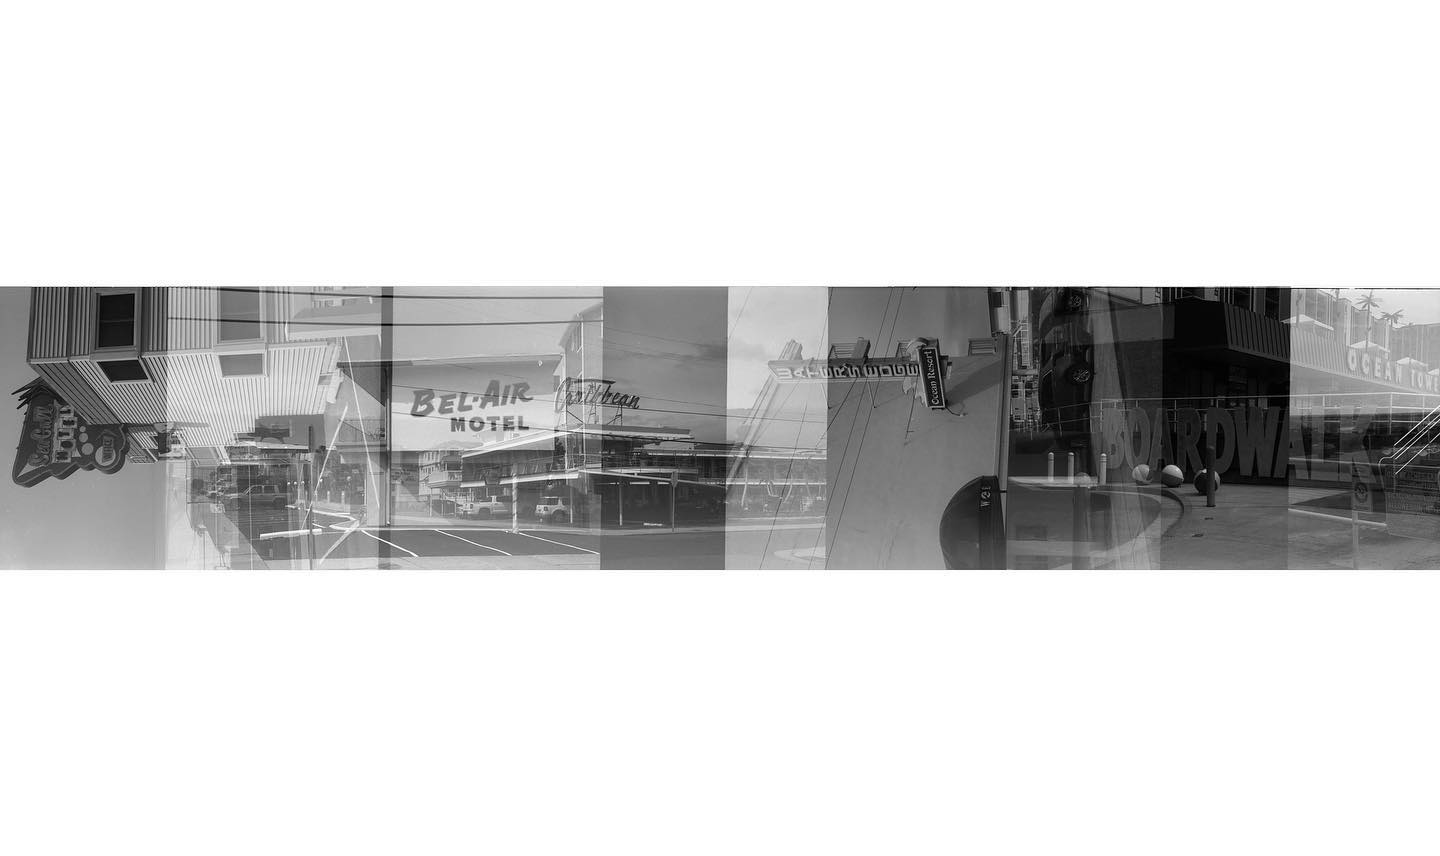 Motels

Instagram doesnât really lend itself to this sort of thing, so swipe to see this closer. This is another example of my #contaxiii crashing photos into each other to interesting effect. #film #filmphotography #filmisnotdead #kodak2238 #rodinal #wildwoodnj #wildwood #allthroughalenspodcast